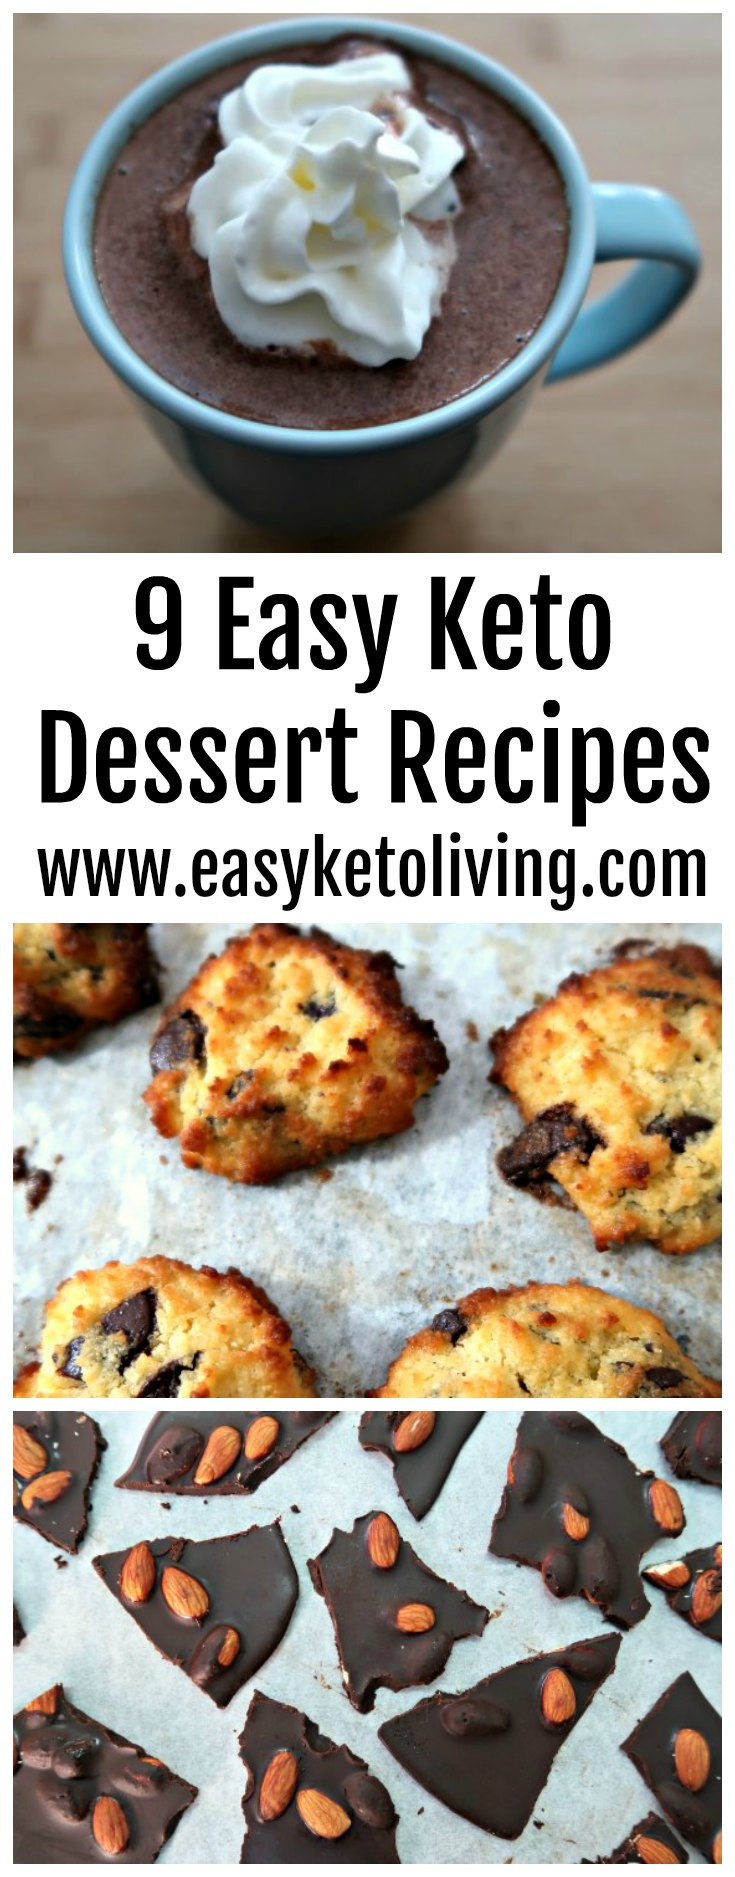 Keto Diet Dessert Recipes
 9 Easy Keto Dessert Recipes Quick Low Carb Ketogenic